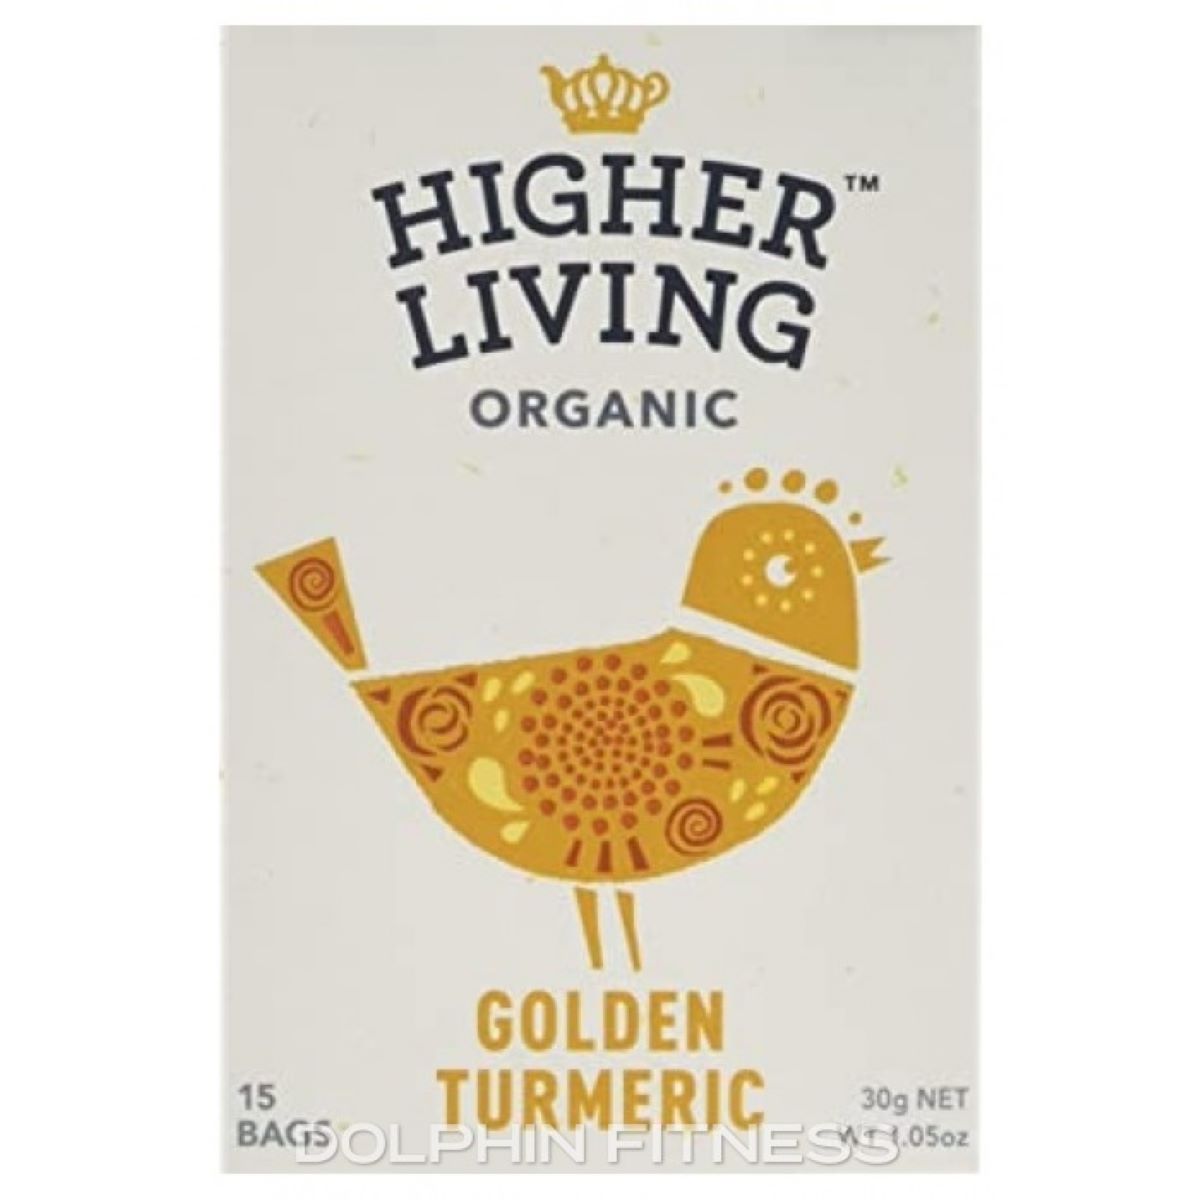 Higher Living Golden Turmeric 30g